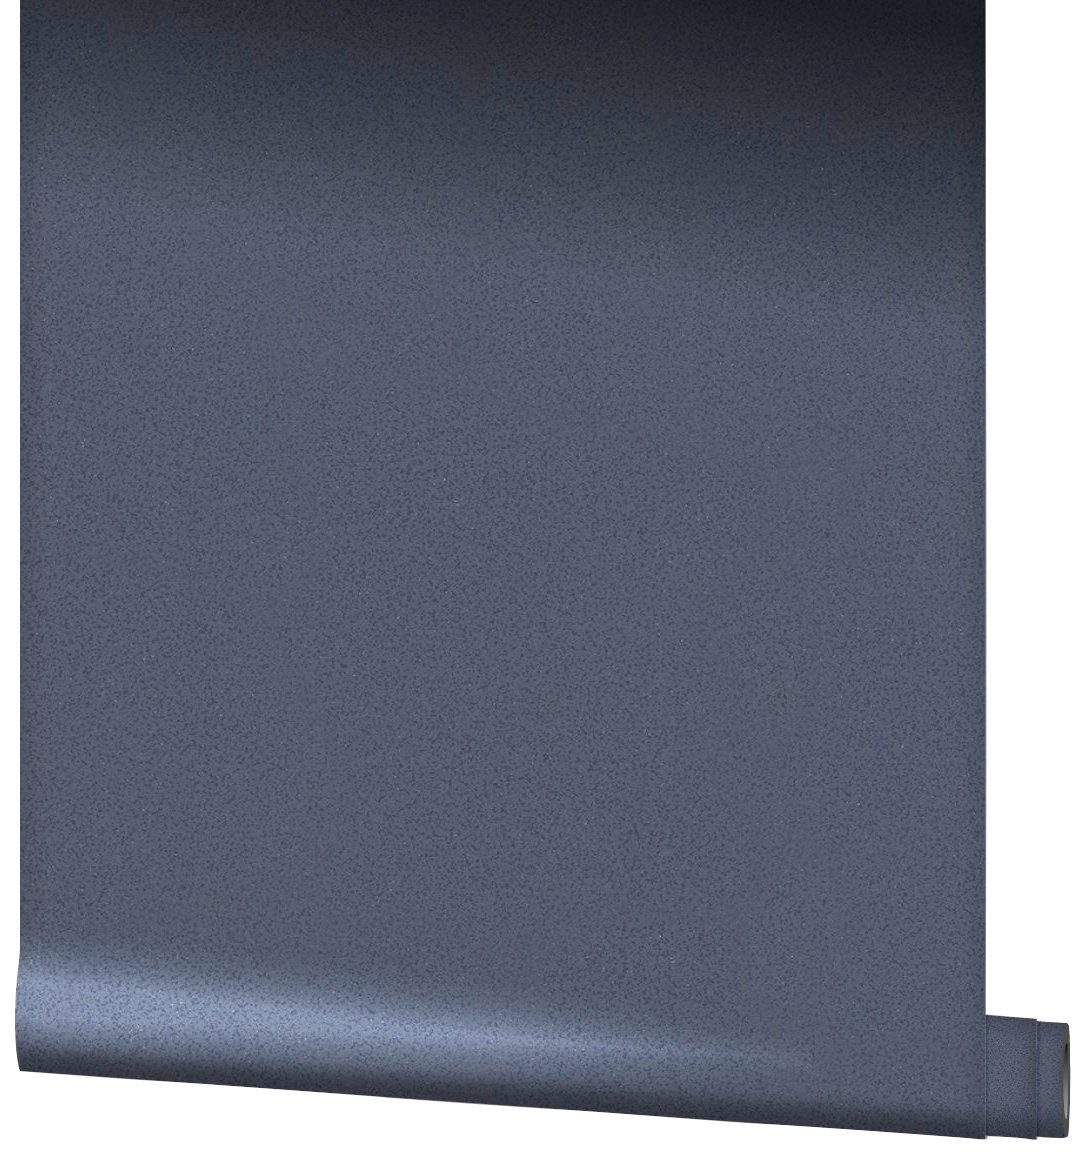 SCHÖNER WOHNEN-Kollektion Vliestapete, blau Meter 0,53 gemustert, 10,05 x